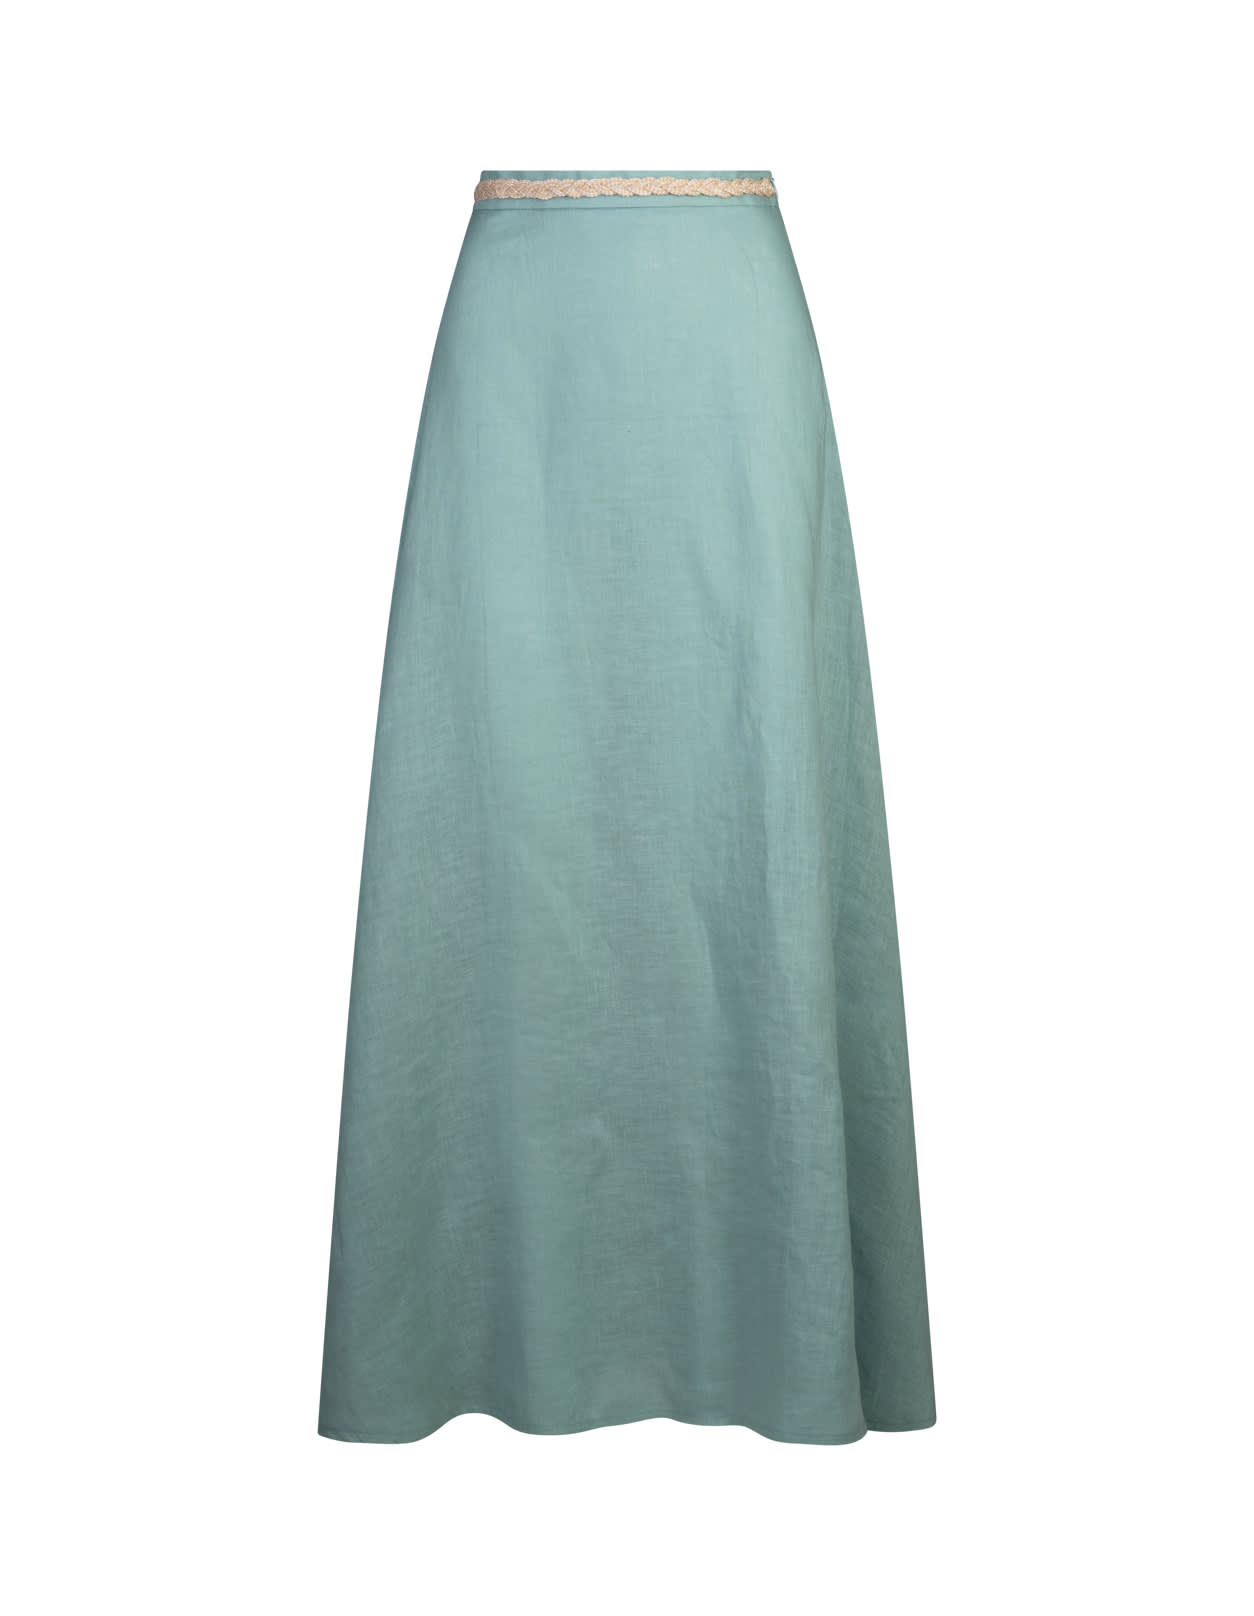 Amotea Charline Long Skirt In Light Blue Linen